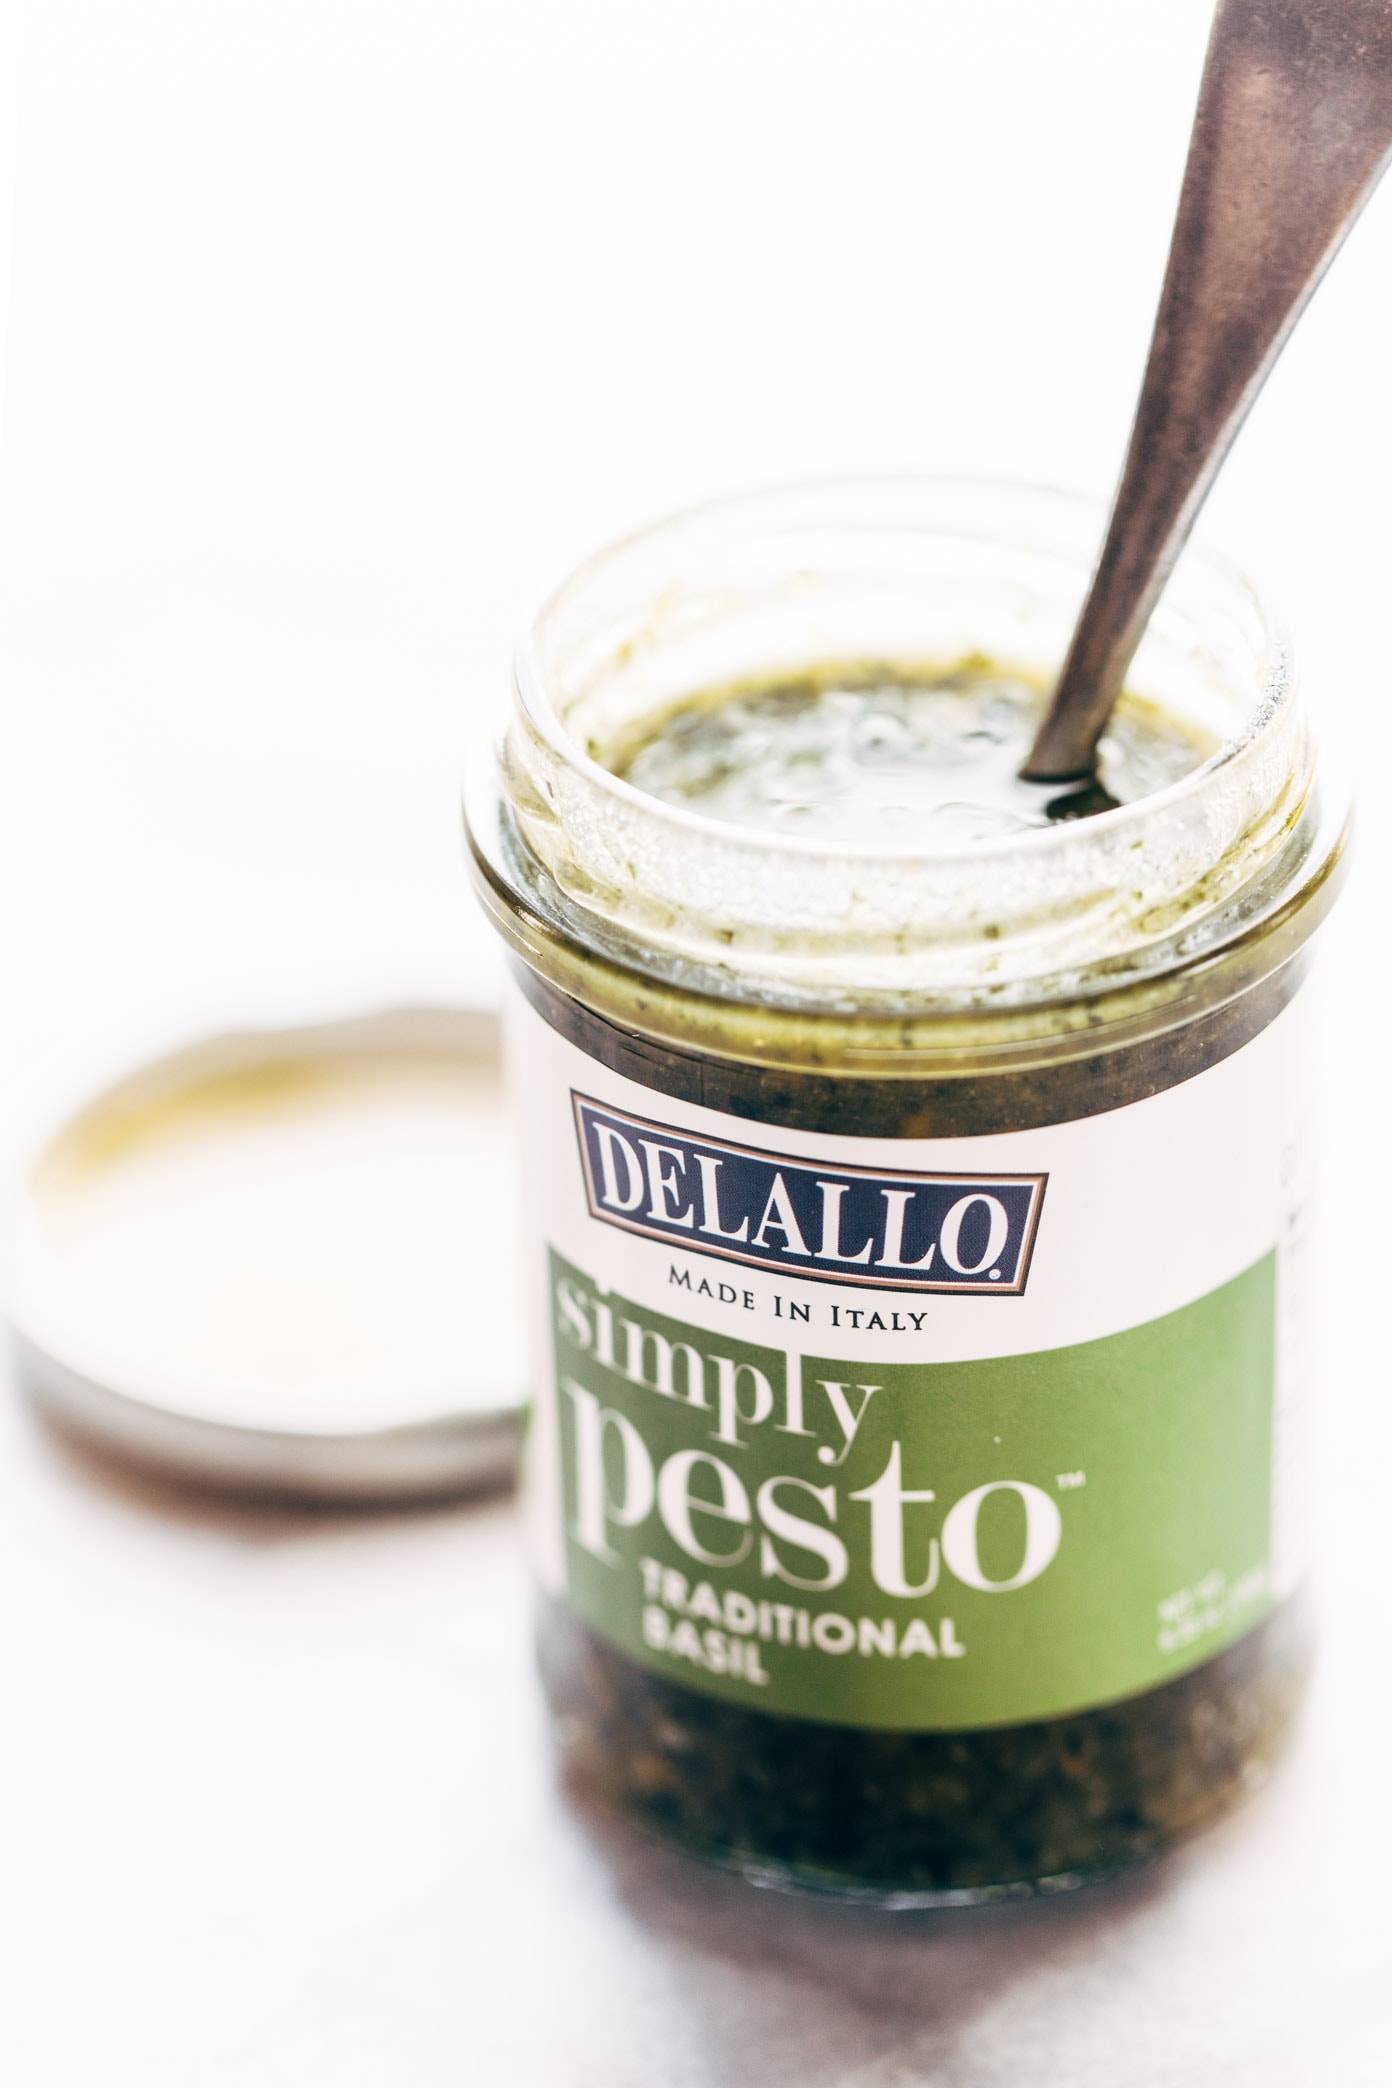 Delallo simple pesto sauce in a jar.